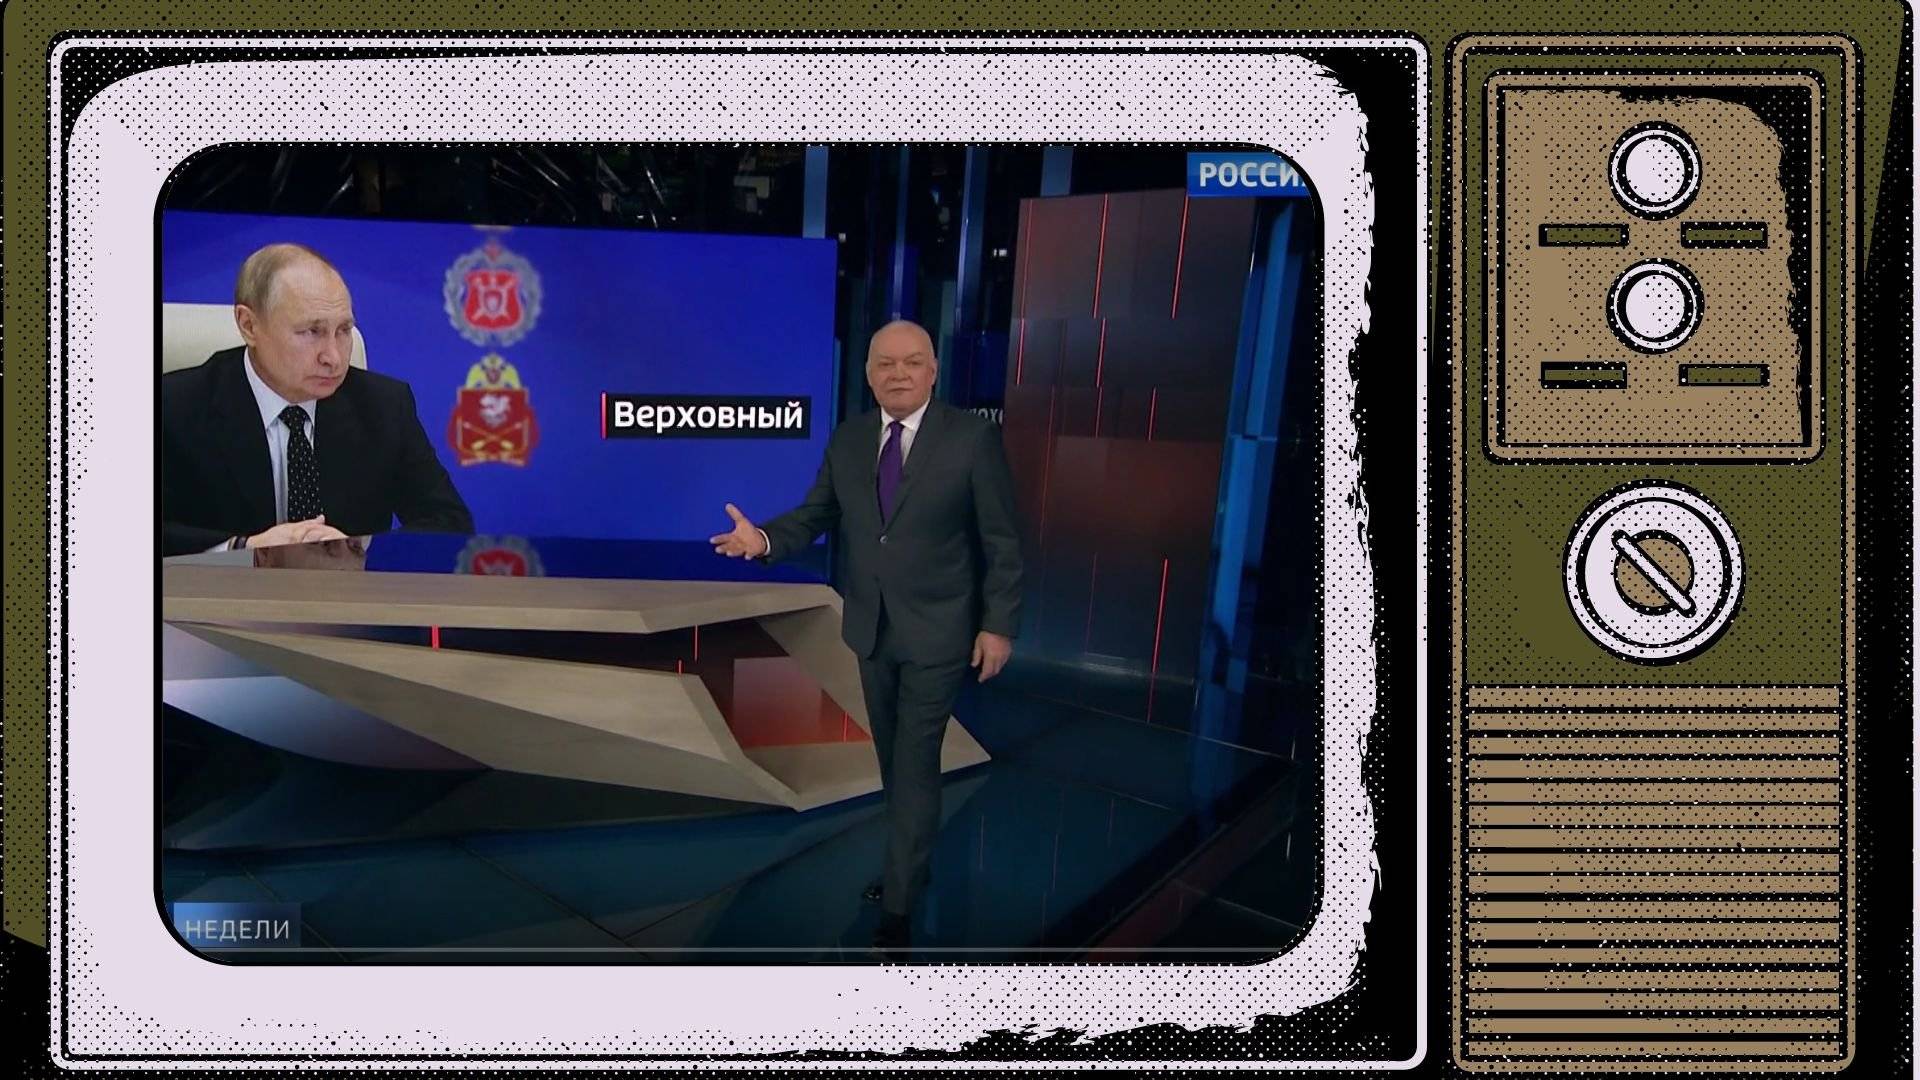 Grafika: w obrysie telewizora zdjęcie ze studia: program prowadzi miły starszy pan, na ekranie zdjęcie Putina z rosyjskim napisem "Najwyższy" [dowódca]